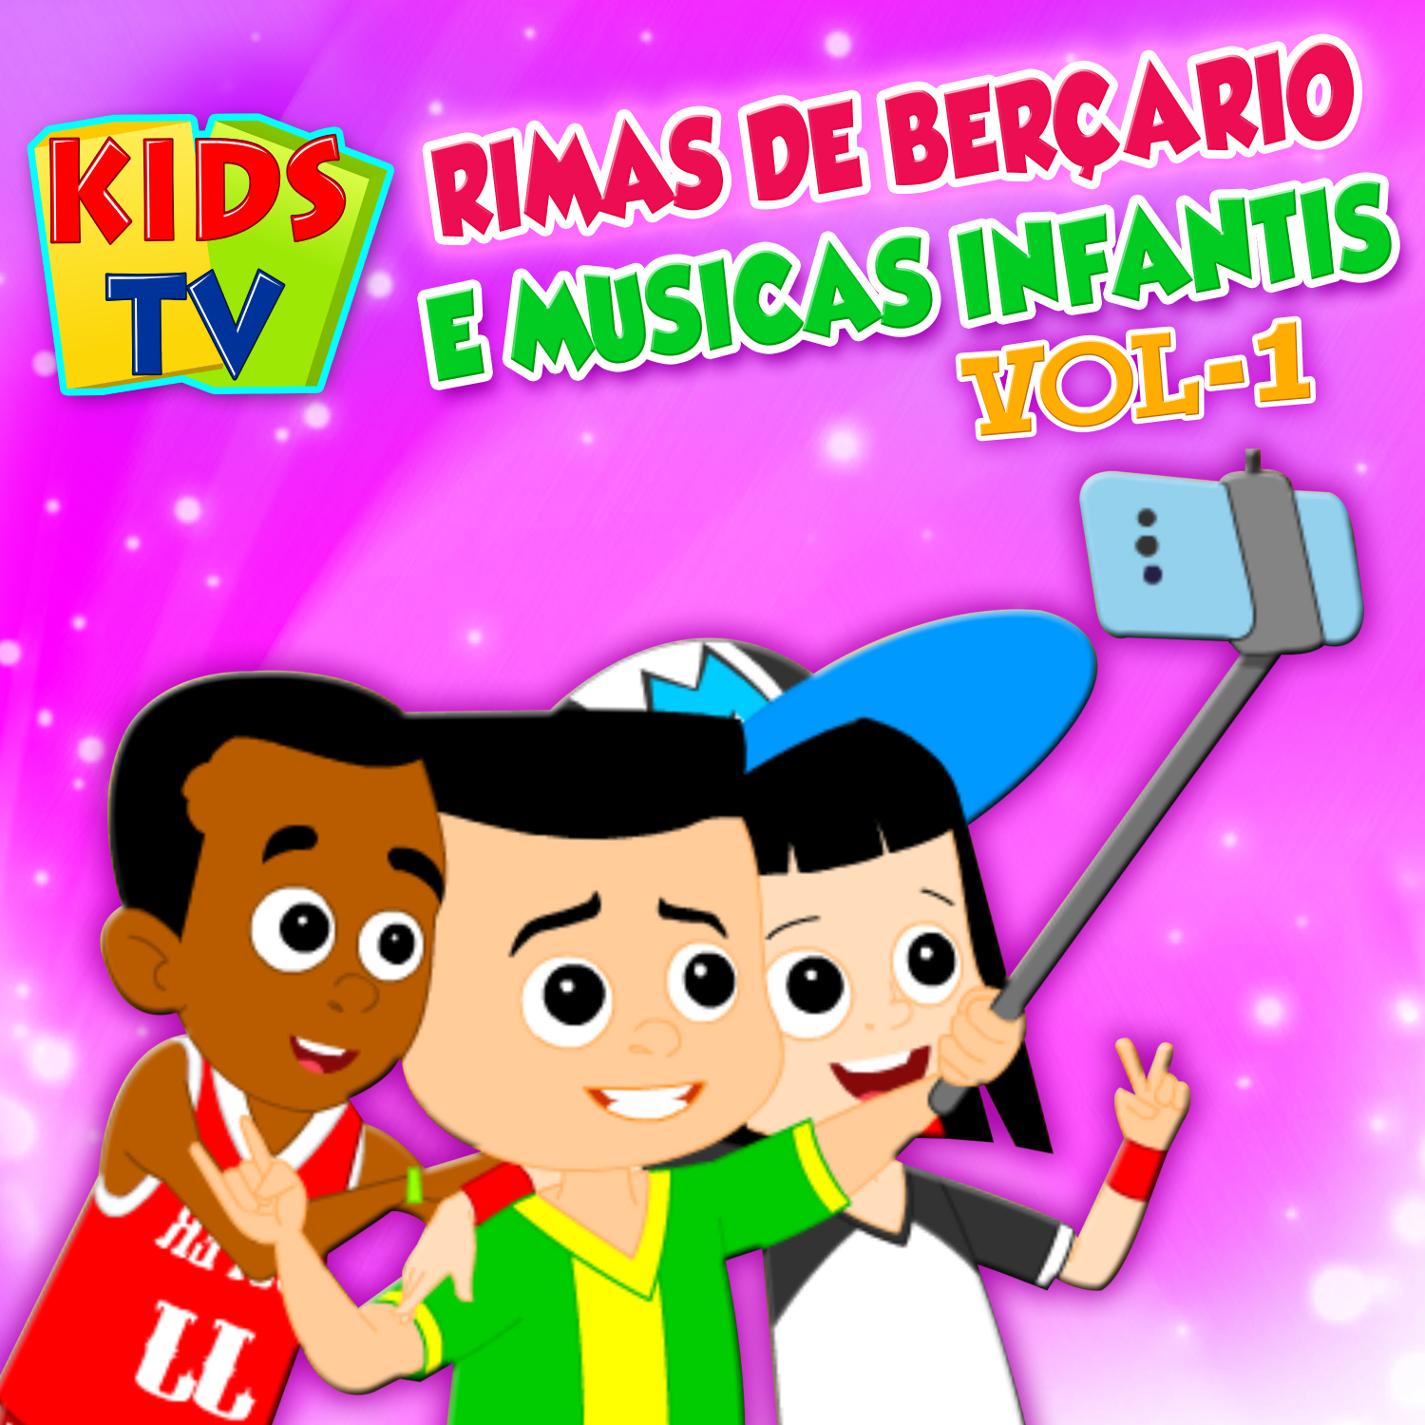 Rimas De Ber ario E Musicas Infantis  Vol. 1